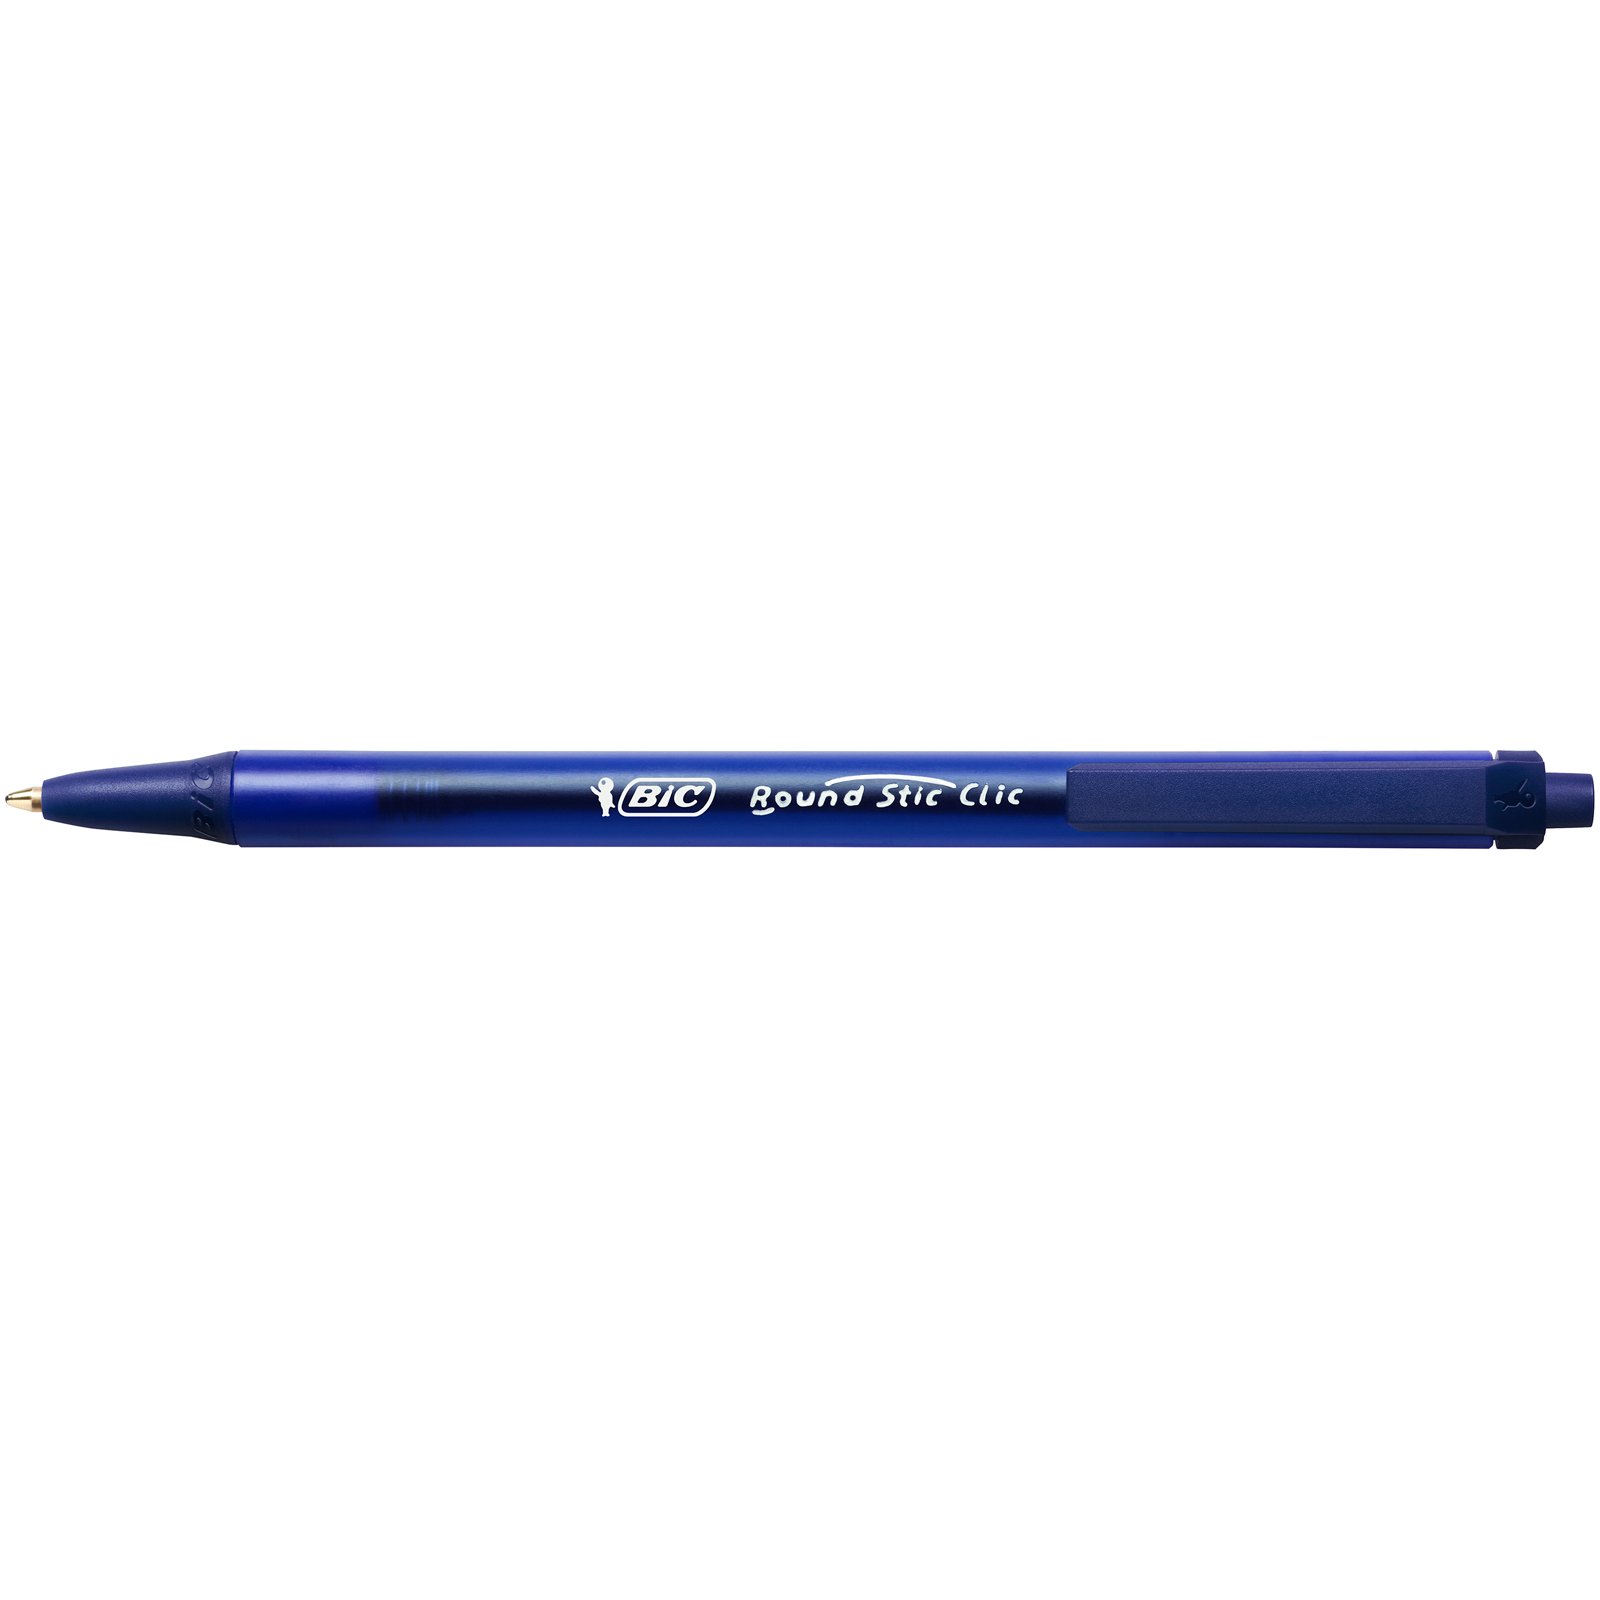 Ручка шариковая BIC Round Stic Clic, 0,32 мм, синий, 1 шт. (926376) - фото 3